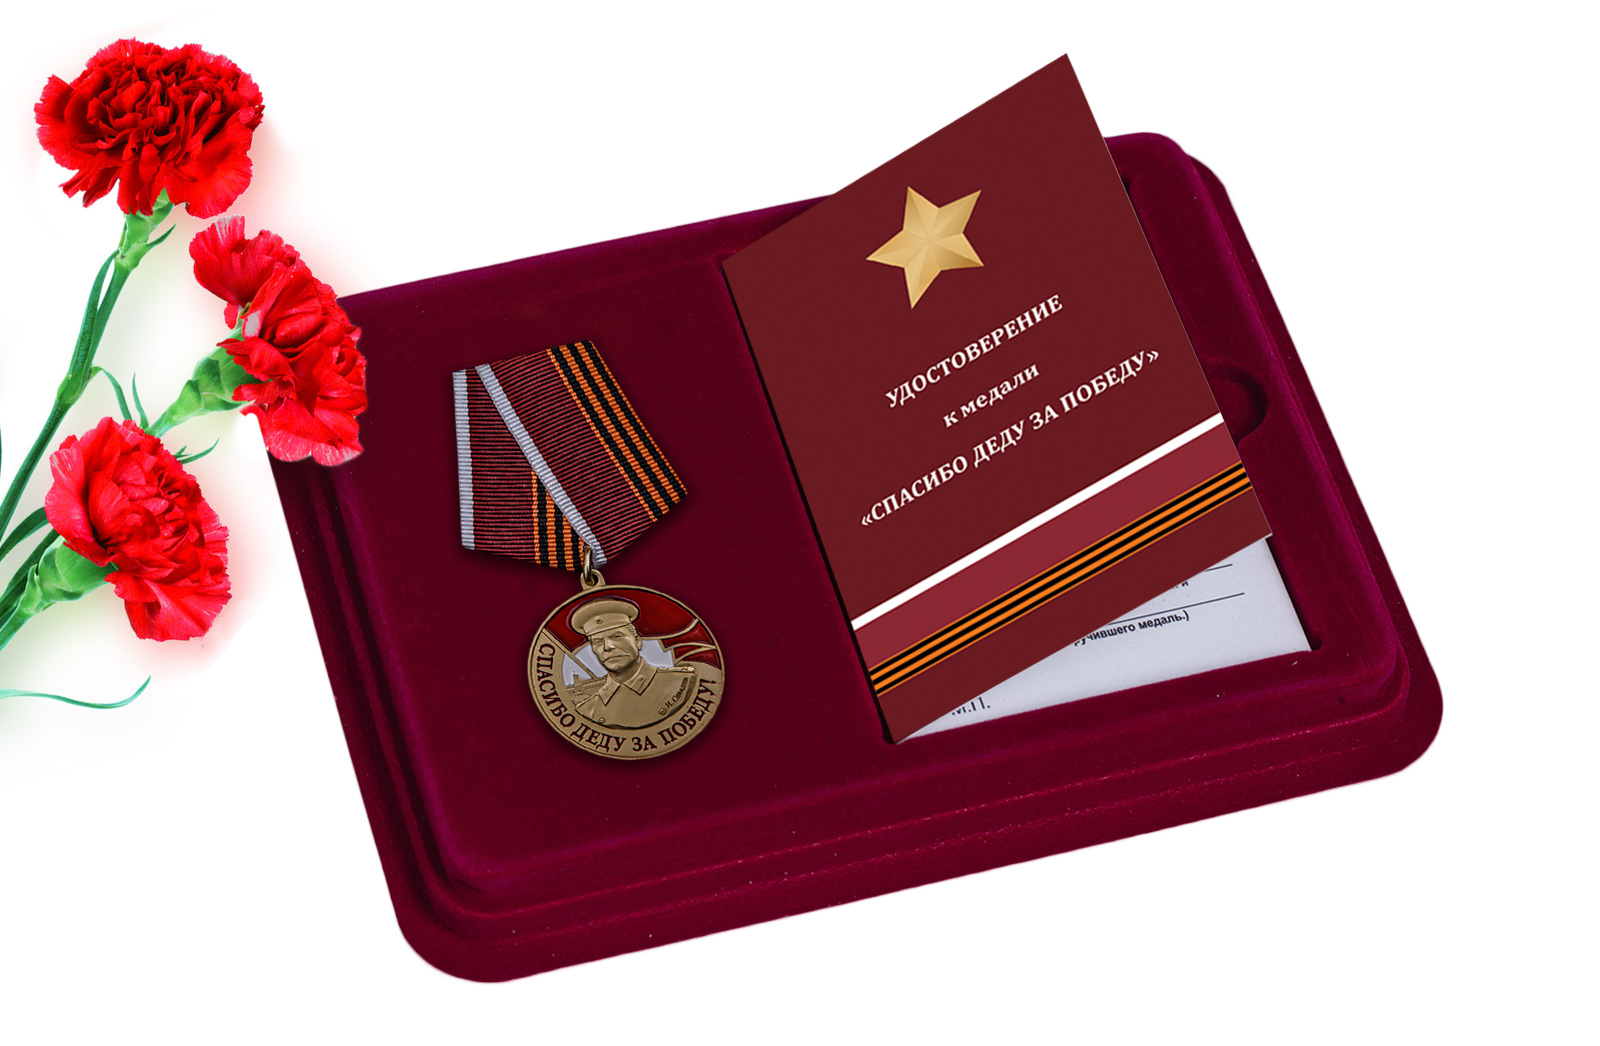 Купить медаль со Сталиным Спасибо деду за Победу онлайн с доставкой